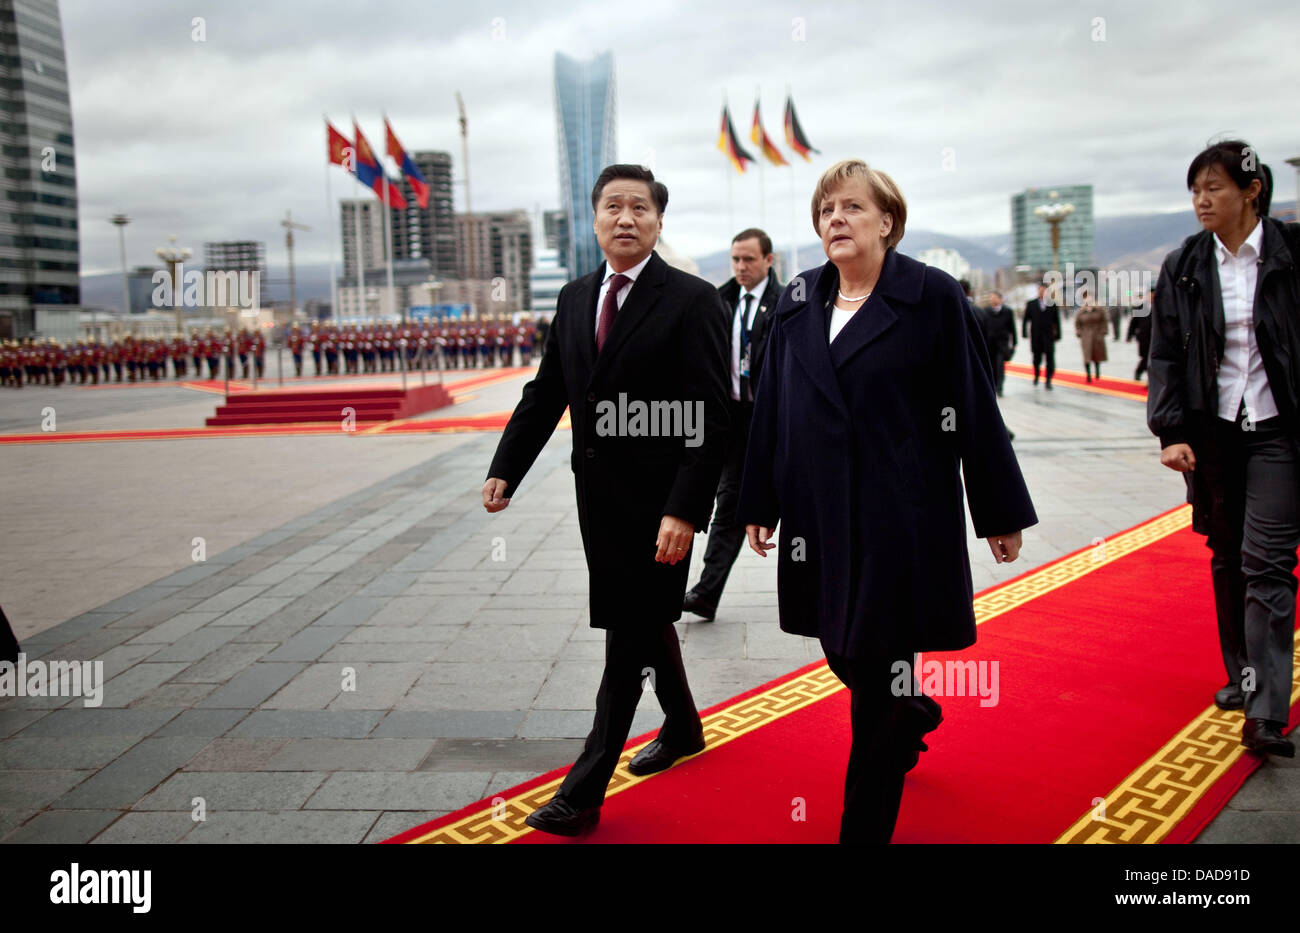 Bundeskanzlerin Angela Merkel (CDU) wird am Donnerstag (13.10.2011) in Ulan Bator in der Mongolei von Ministerpräsident Sukhbaatar Batbold mit militärischen Ehren begrüßt. Auf dem Programm des Besuchs steht unter anderem auch der Abschluss von Wirtschaftsverträgen mit der Mongolei. Michael Kappeler dpa Stock Photo